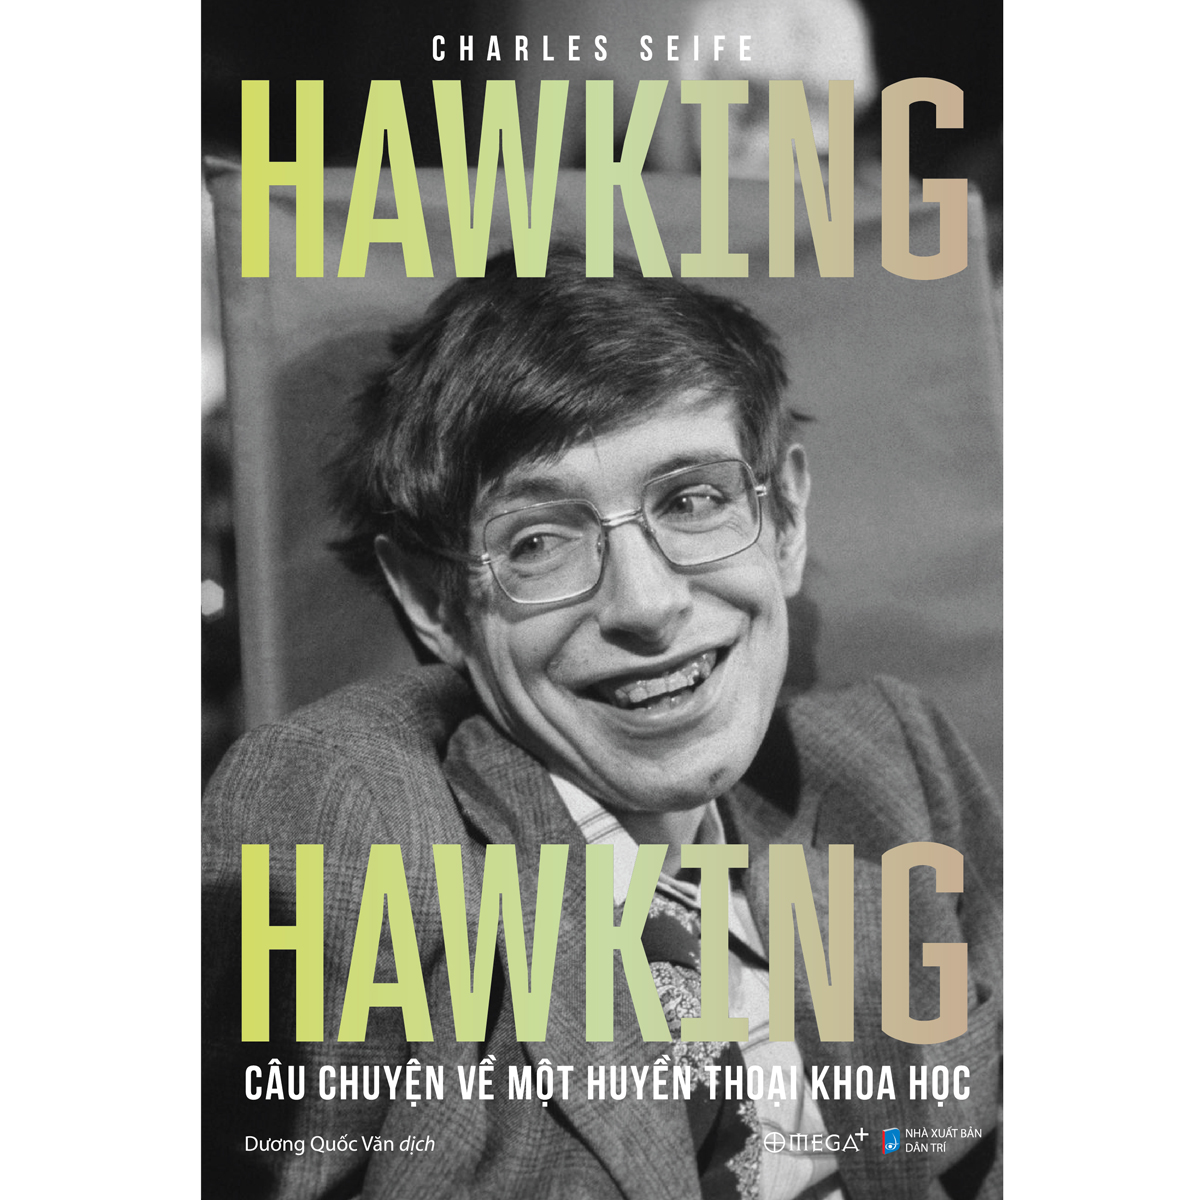 Sách - Hawking Hawking Câu Chuyện Về Một Huyền Thoại Khoa Học 399K